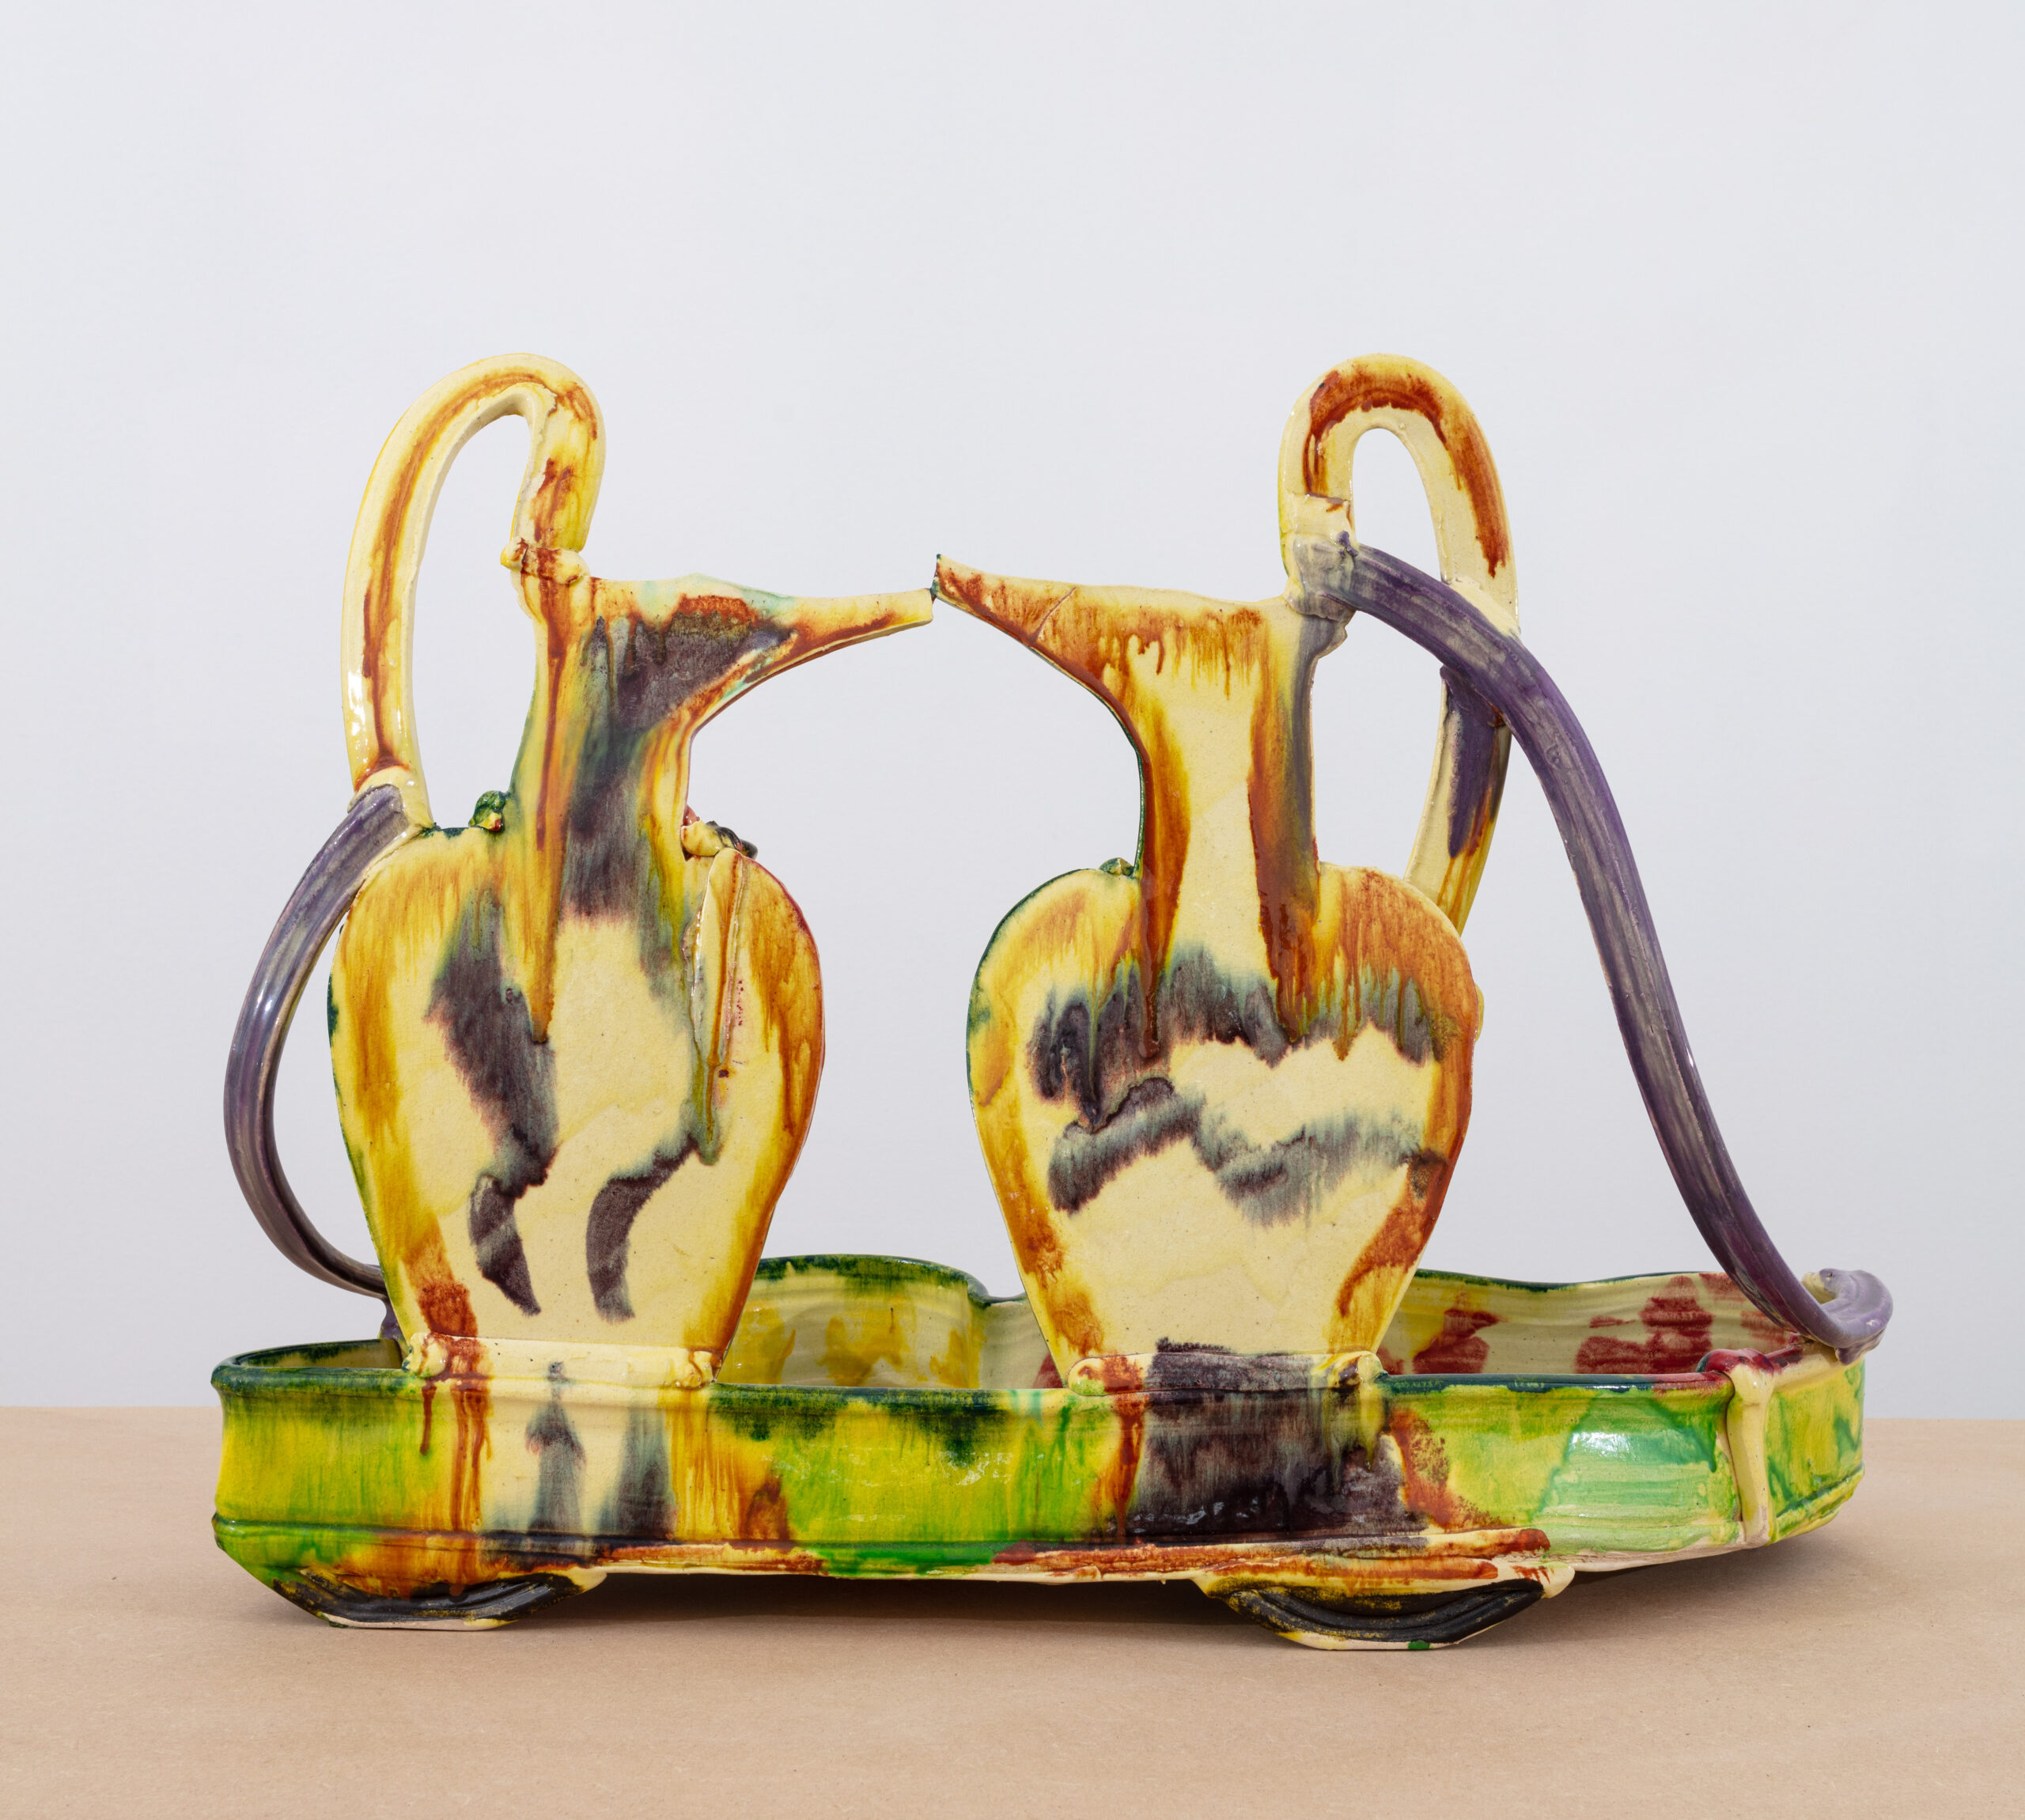 Betty Woodman, Loving, 1986, glazed earthenware, 20 x 28.5 × 11.5 in.